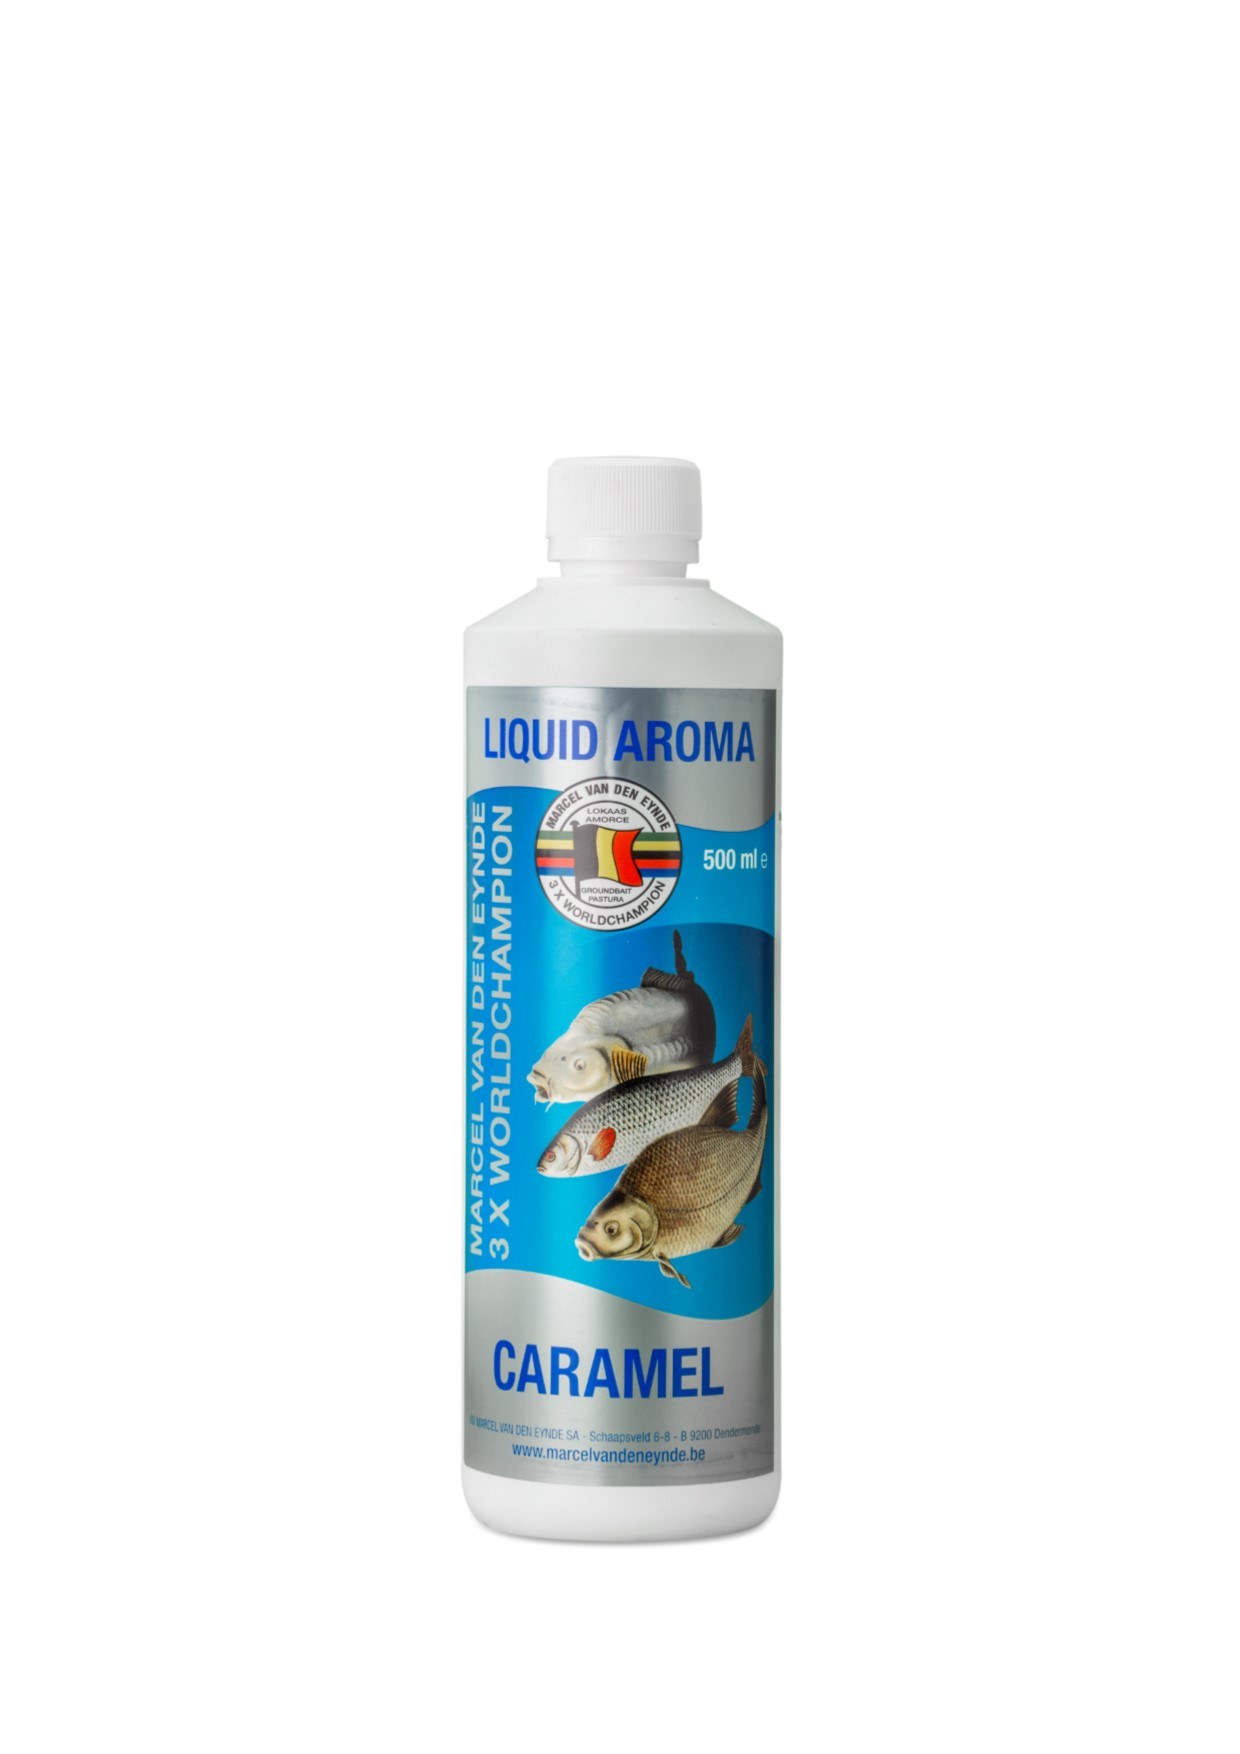 VDE Liquid Aroma Caramel 500 ml. -  Tečna aroma Karamela je prava sveobuhvatna aroma koju možete koristiti u svakom trenutku. Miris našeg tekućeg okusa Caramel je intenzivna aroma karamele i može se koristiti tijekom cijele godine. Proizvod se može koristiti na različitim vodama i različitim disciplinama. U mješavini mamaca: prednost tekuće arome je u tome što svoju aromu oslobađa u vodu mnogo brže od arome praha, tako da možete brže privući ribu na mjesto za ribolov. Aroma u prahu treba neko vrijeme da svoju aromu u potpunosti preda mamcu (zbog toga uvijek može proći neko vrijeme prije nego što riba dobije na licu mjesta). Dodajte tečnu aromu u svoju vodu kojom želite da navlažite svoju mješavinu ili dodajte dobru crtu svojoj mješavini. Preporučena doza je 50 do 100 ml po kilogramu mamca (bez gline). Čestice i kus-kus: ako koristite mešavinu čestica, možemo vam dati savet da dodate malu količinu tečne arome melase i tečne arome Big Fish, za ekstra moćan efekat. Imajte na umu da je melasa slatka i daje dodatnu ljepljivost. Za kus-kus, dovoljno je dodati malo tečnog aditiva, možete se poigrati koliko jako želite da vaš kus-kus miriše. Kotači: samo dodajte malu količinu na crve ili kastere 30 minuta prije ribolova. Cijena: 12.5 BAM